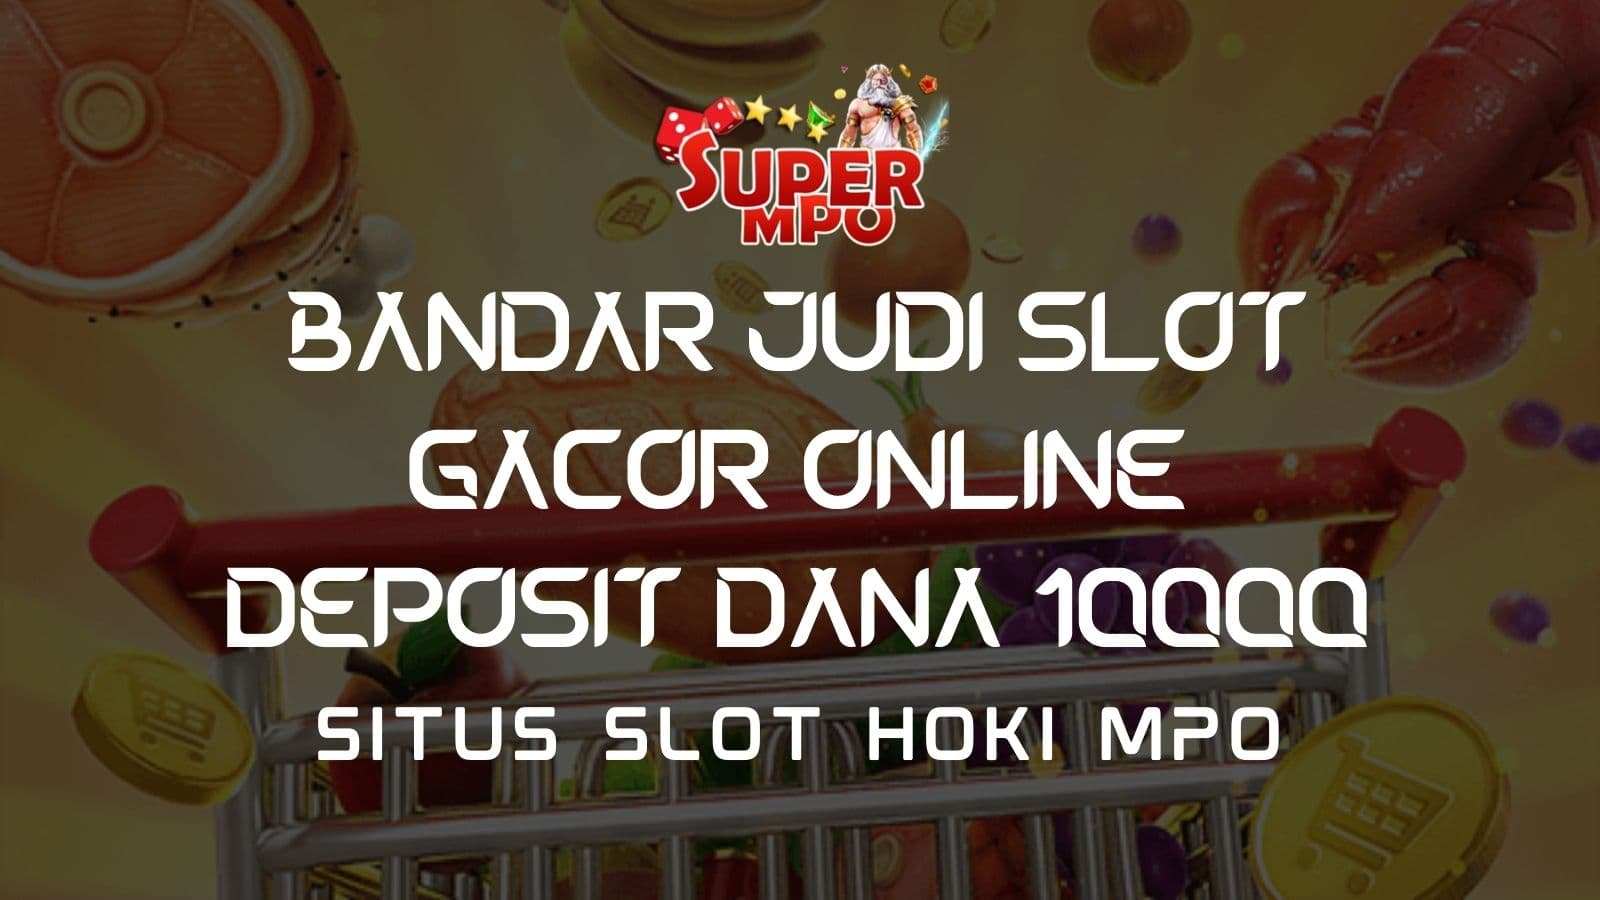 super-slot-lewat-dana-10000-2-1600x900.jpeg?0a7ab57106044762b4f6616c5d457062